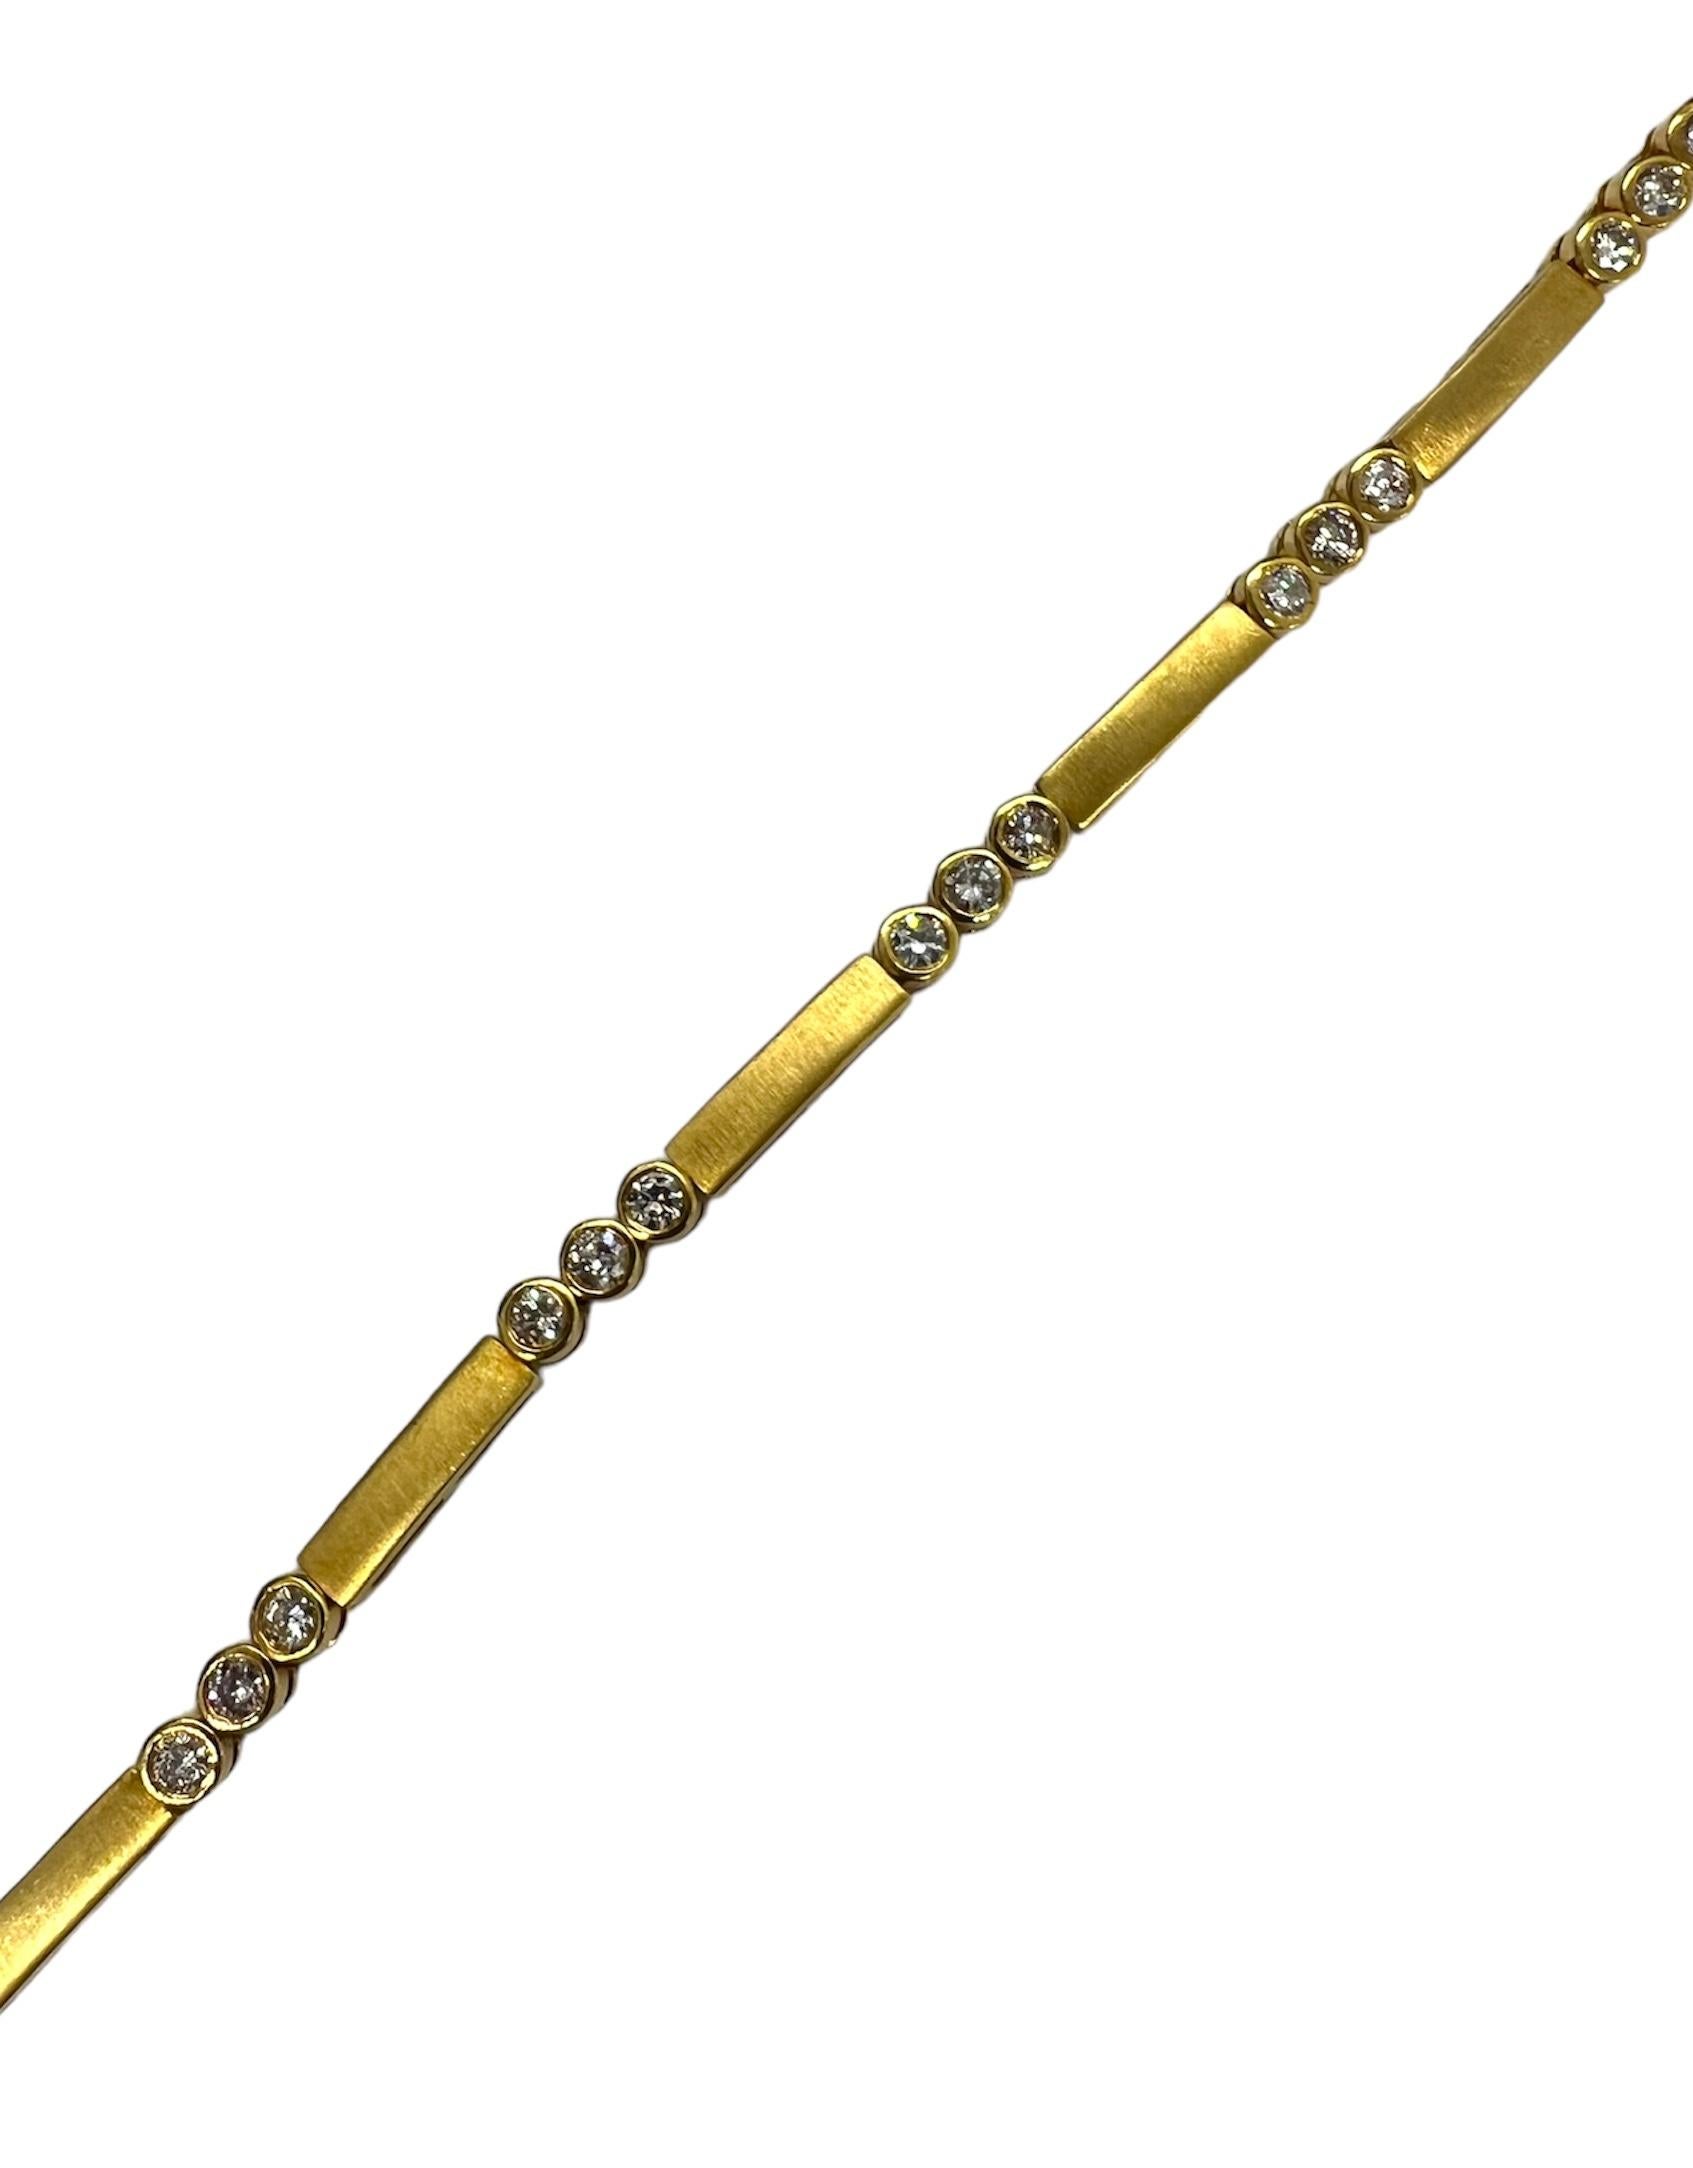 Bracelet en or jaune 14K avec des diamants ronds.

Sophia D by Joseph Dardashti Ltd est connue dans le monde entier depuis 35 ans et s'inspire du design classique de l'Art déco qui fusionne avec les techniques de fabrication modernes.